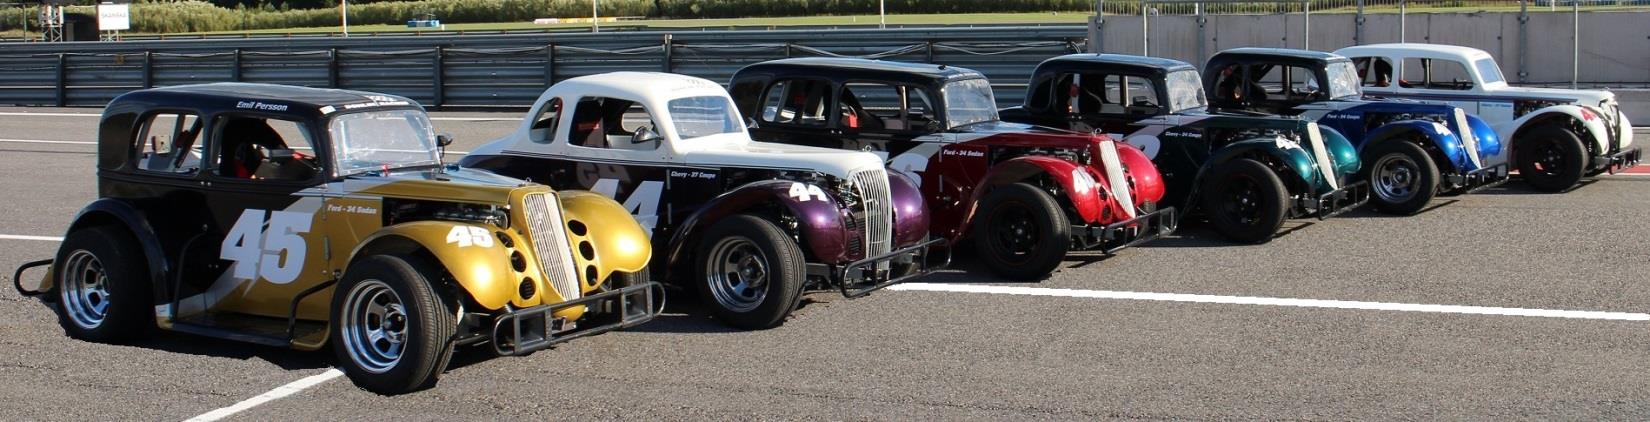 En helt ny klass i Sverige! Vad är Legend Car? Bilarna är Amerikanska sedan- och coupe modeller från 1930-40 talet byggda i 5/8 delars skala.